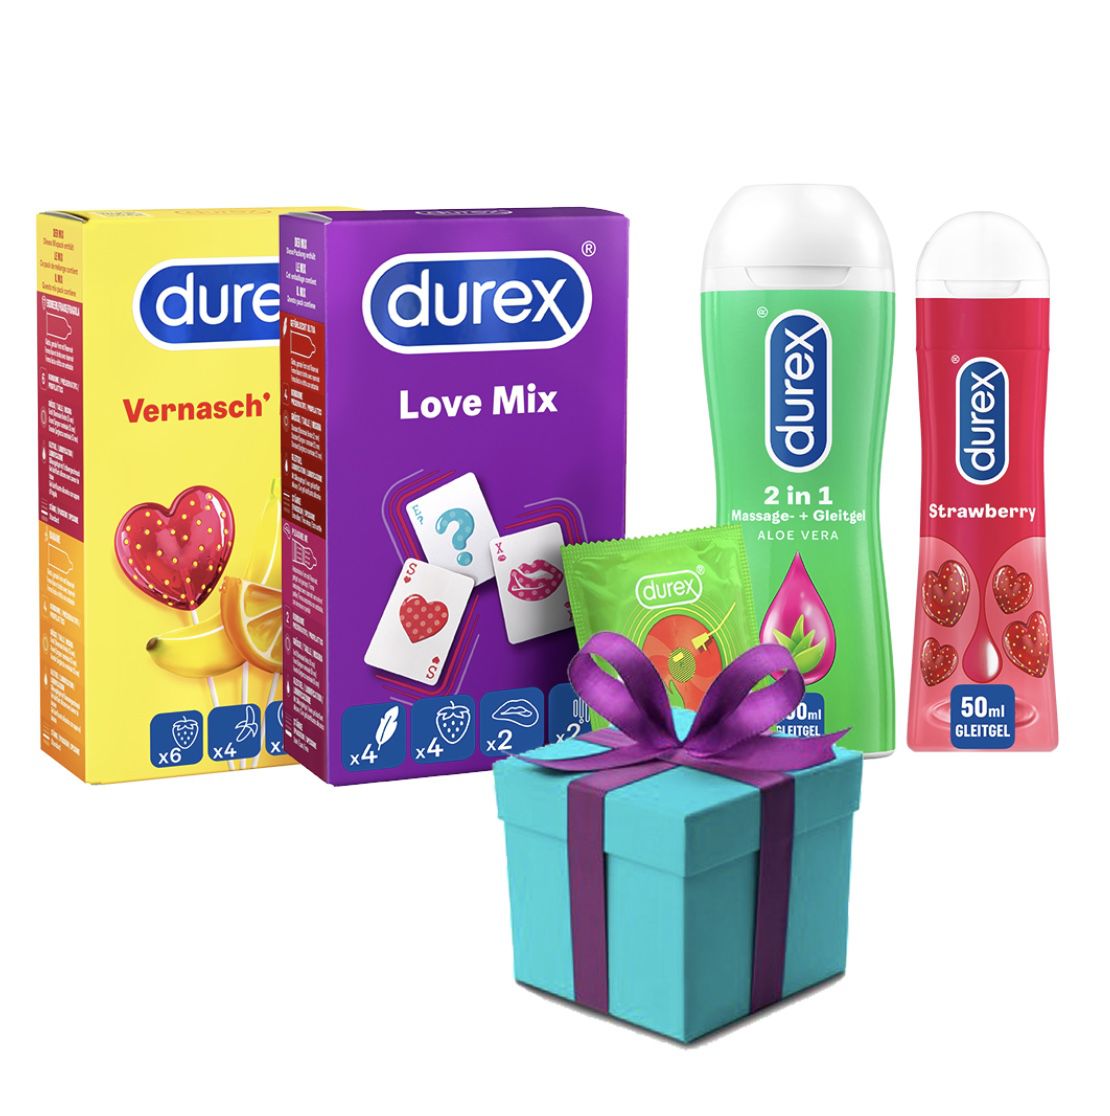 Durex Love-Set zum Valentinstag mit erotischer Überraschung für 23€ (statt 30€)